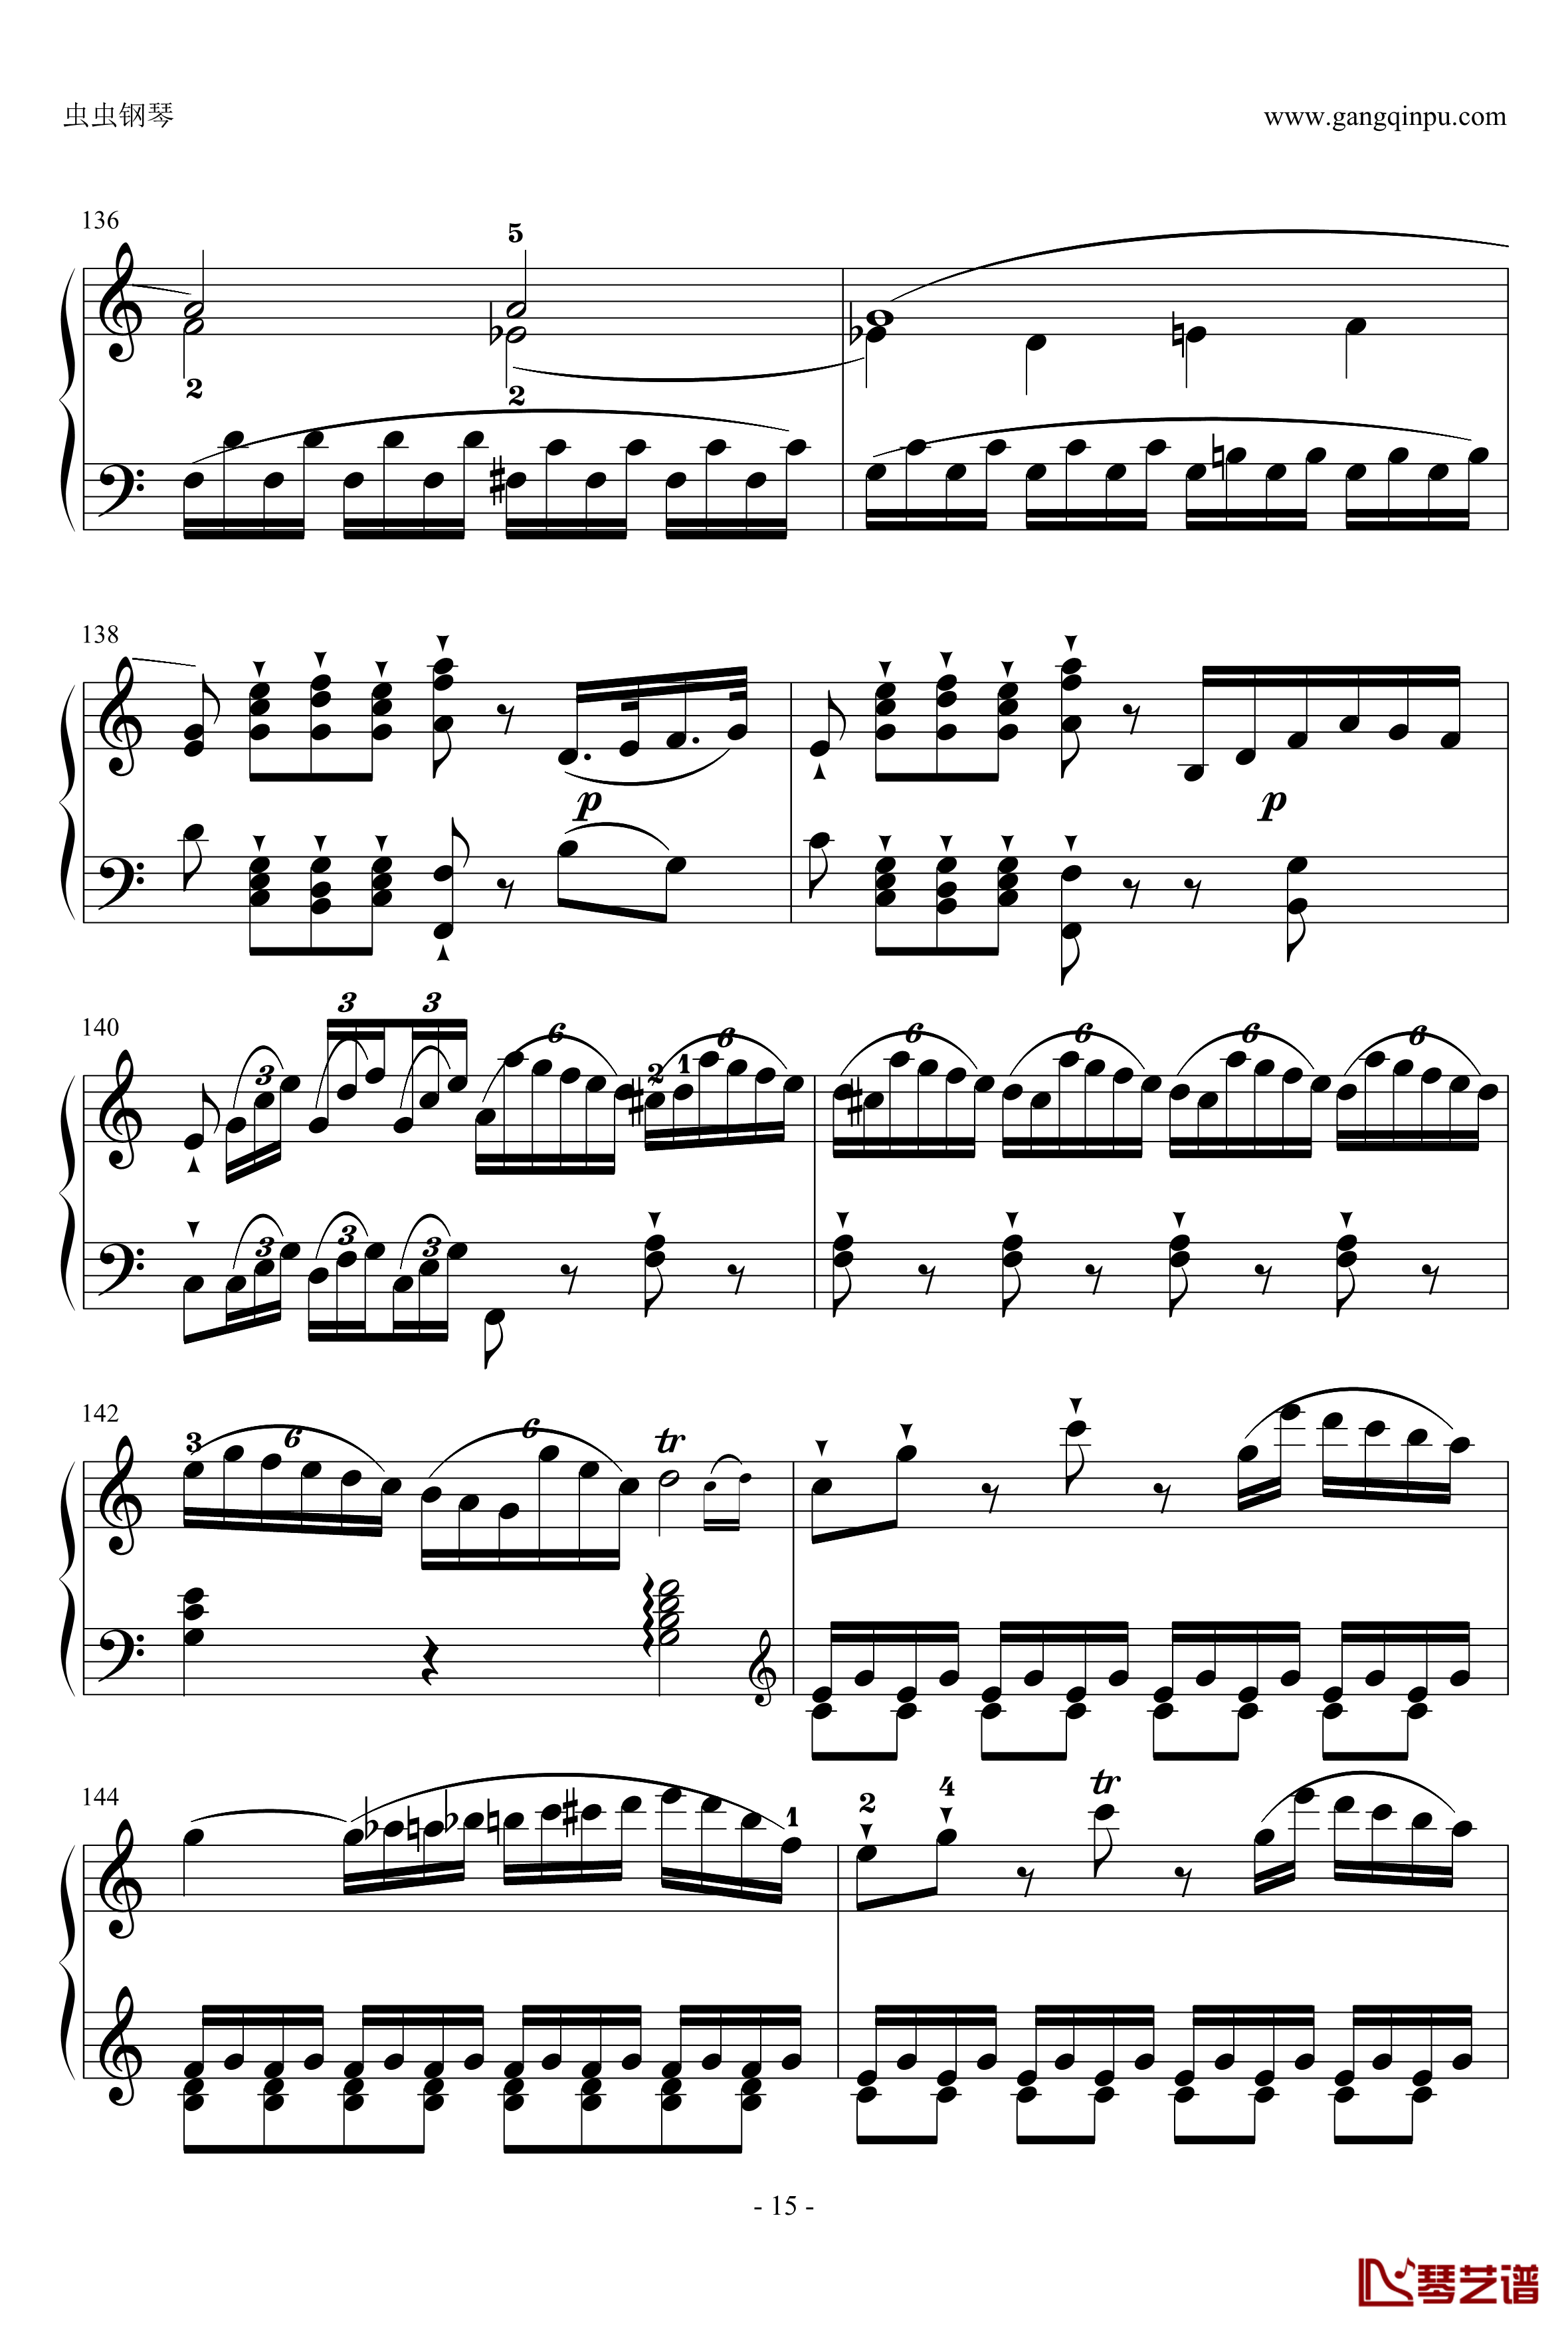 C大调奏鸣曲钢琴谱第一乐章-海顿15